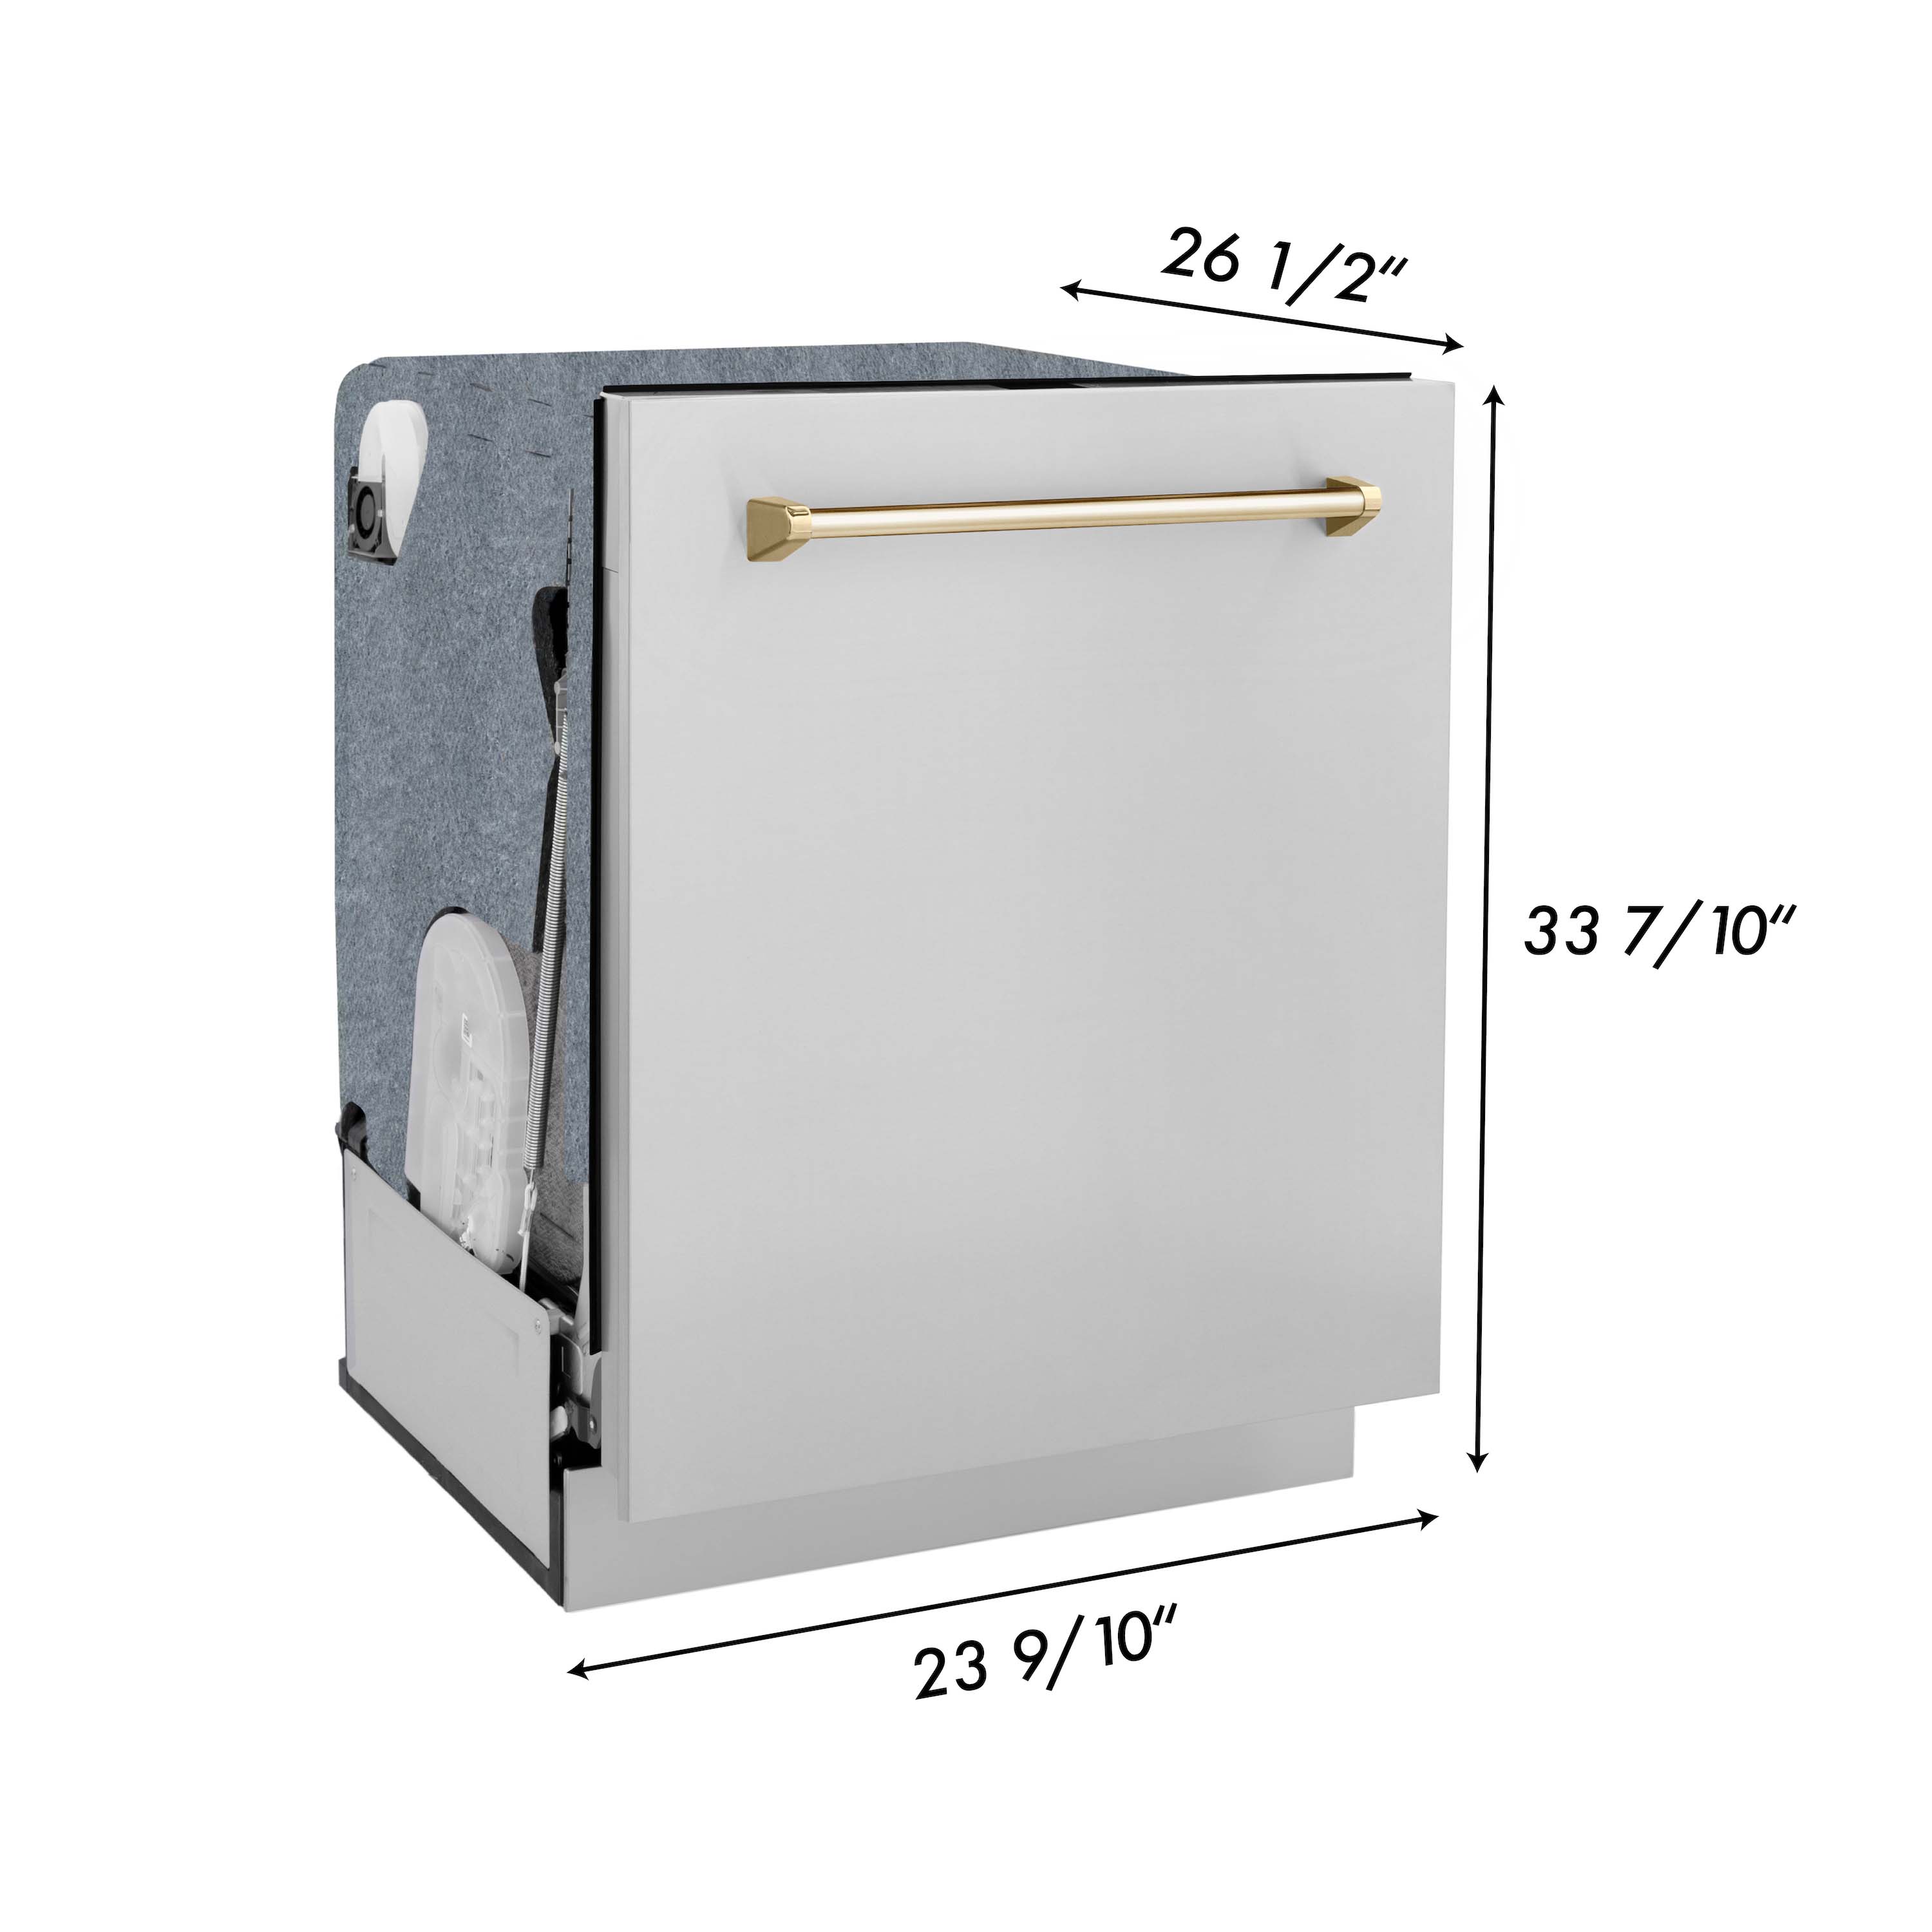 ZLINE 24-inch dishwasher dimensions.